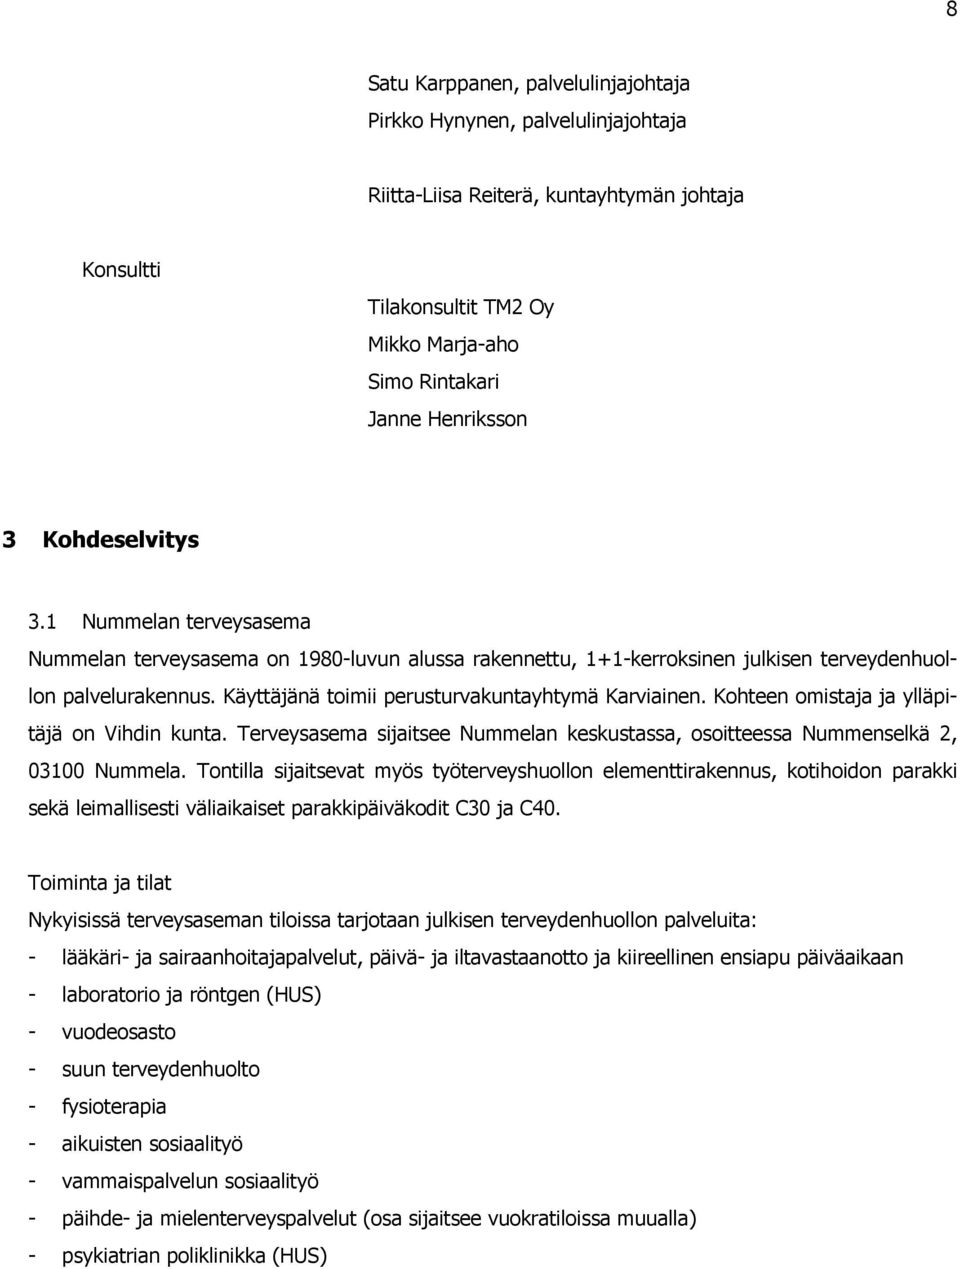 Käyttäjänä toimii perusturvakuntayhtymä Karviainen. Kohteen omistaja ja ylläpitäjä on Vihdin kunta. Terveysasema sijaitsee Nummelan keskustassa, osoitteessa Nummenselkä 2, 03100 Nummela.